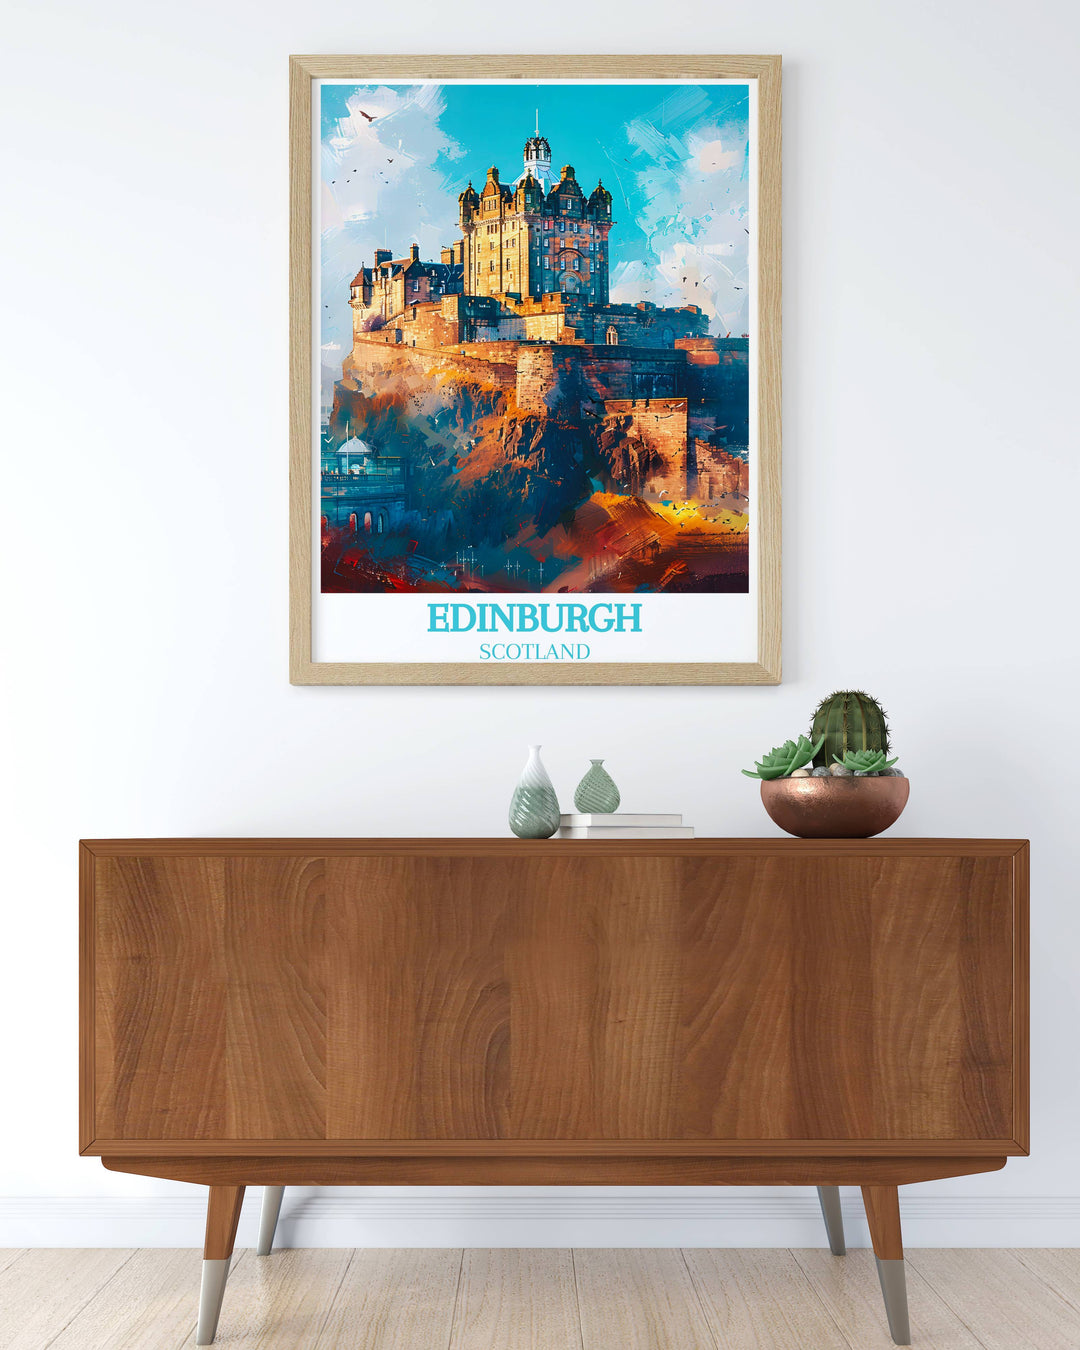 Bezaubernder Kunstdruck von Edinburgh Castle – ein majestätisches schottisches Geschenk für jeden Raum